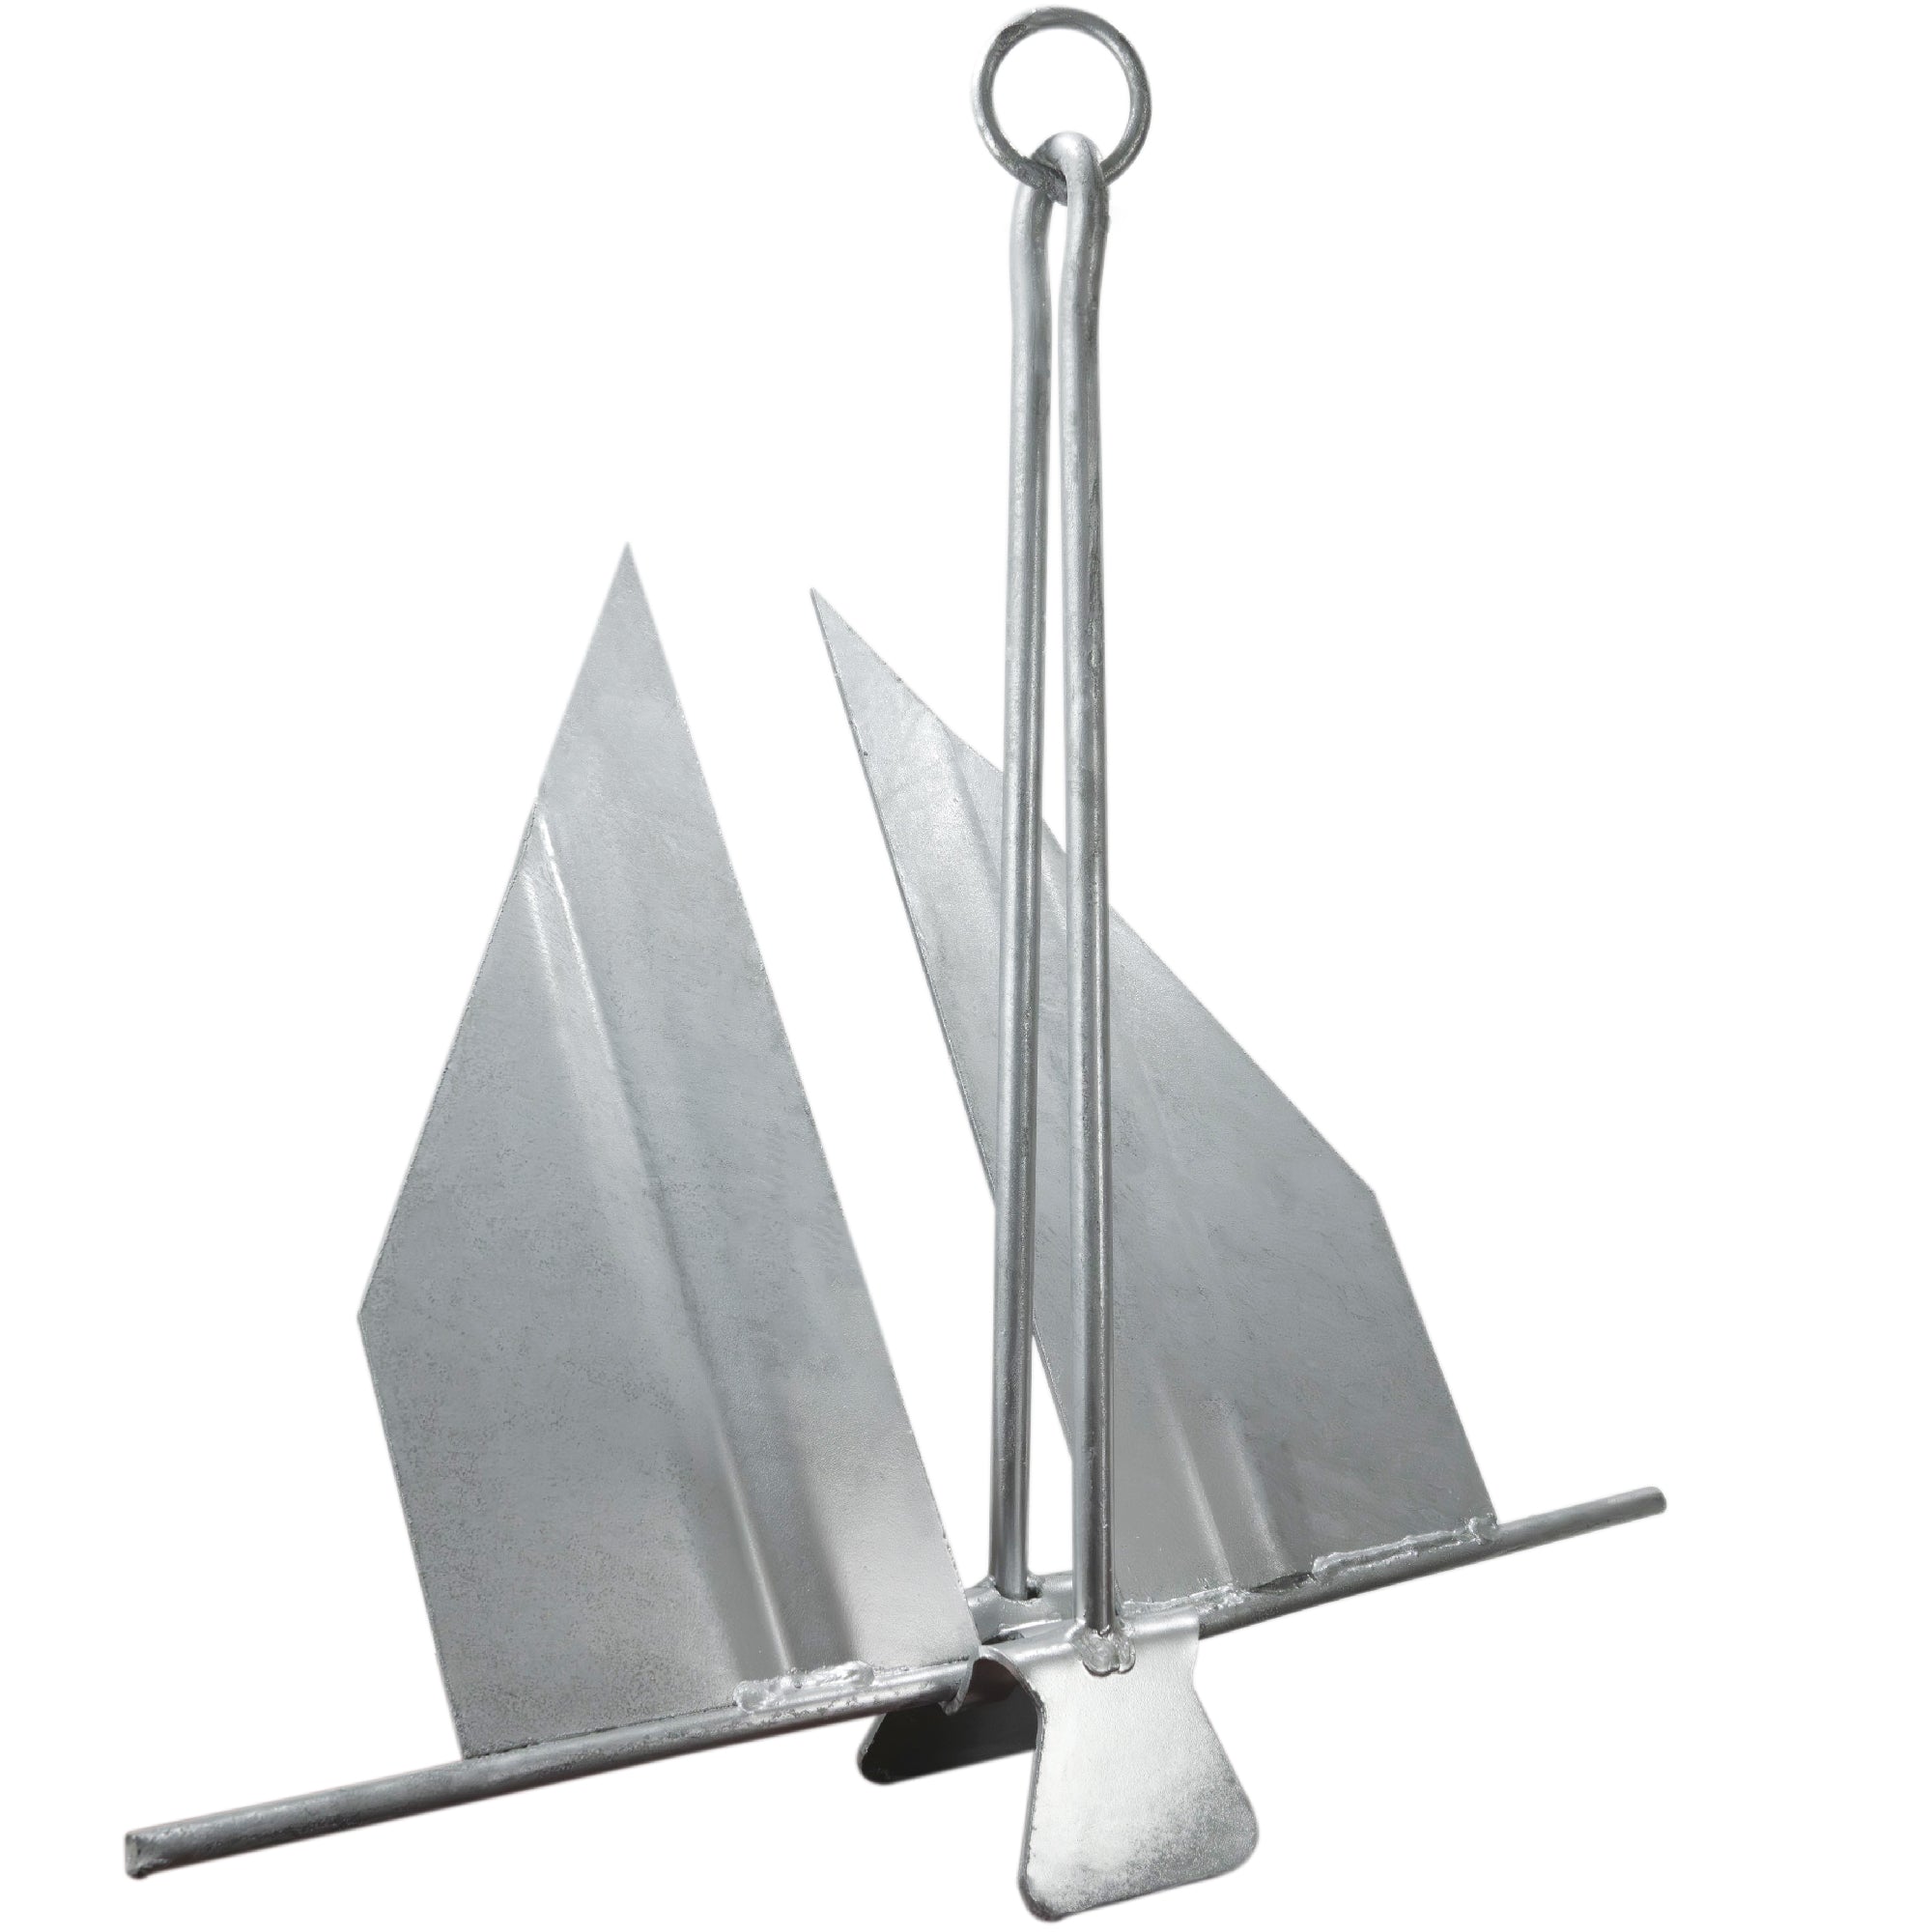 Boat Fluke Anchor, 3 Lb Easy-Release Galvanized Steel, Slip Ring Shank - FO4554